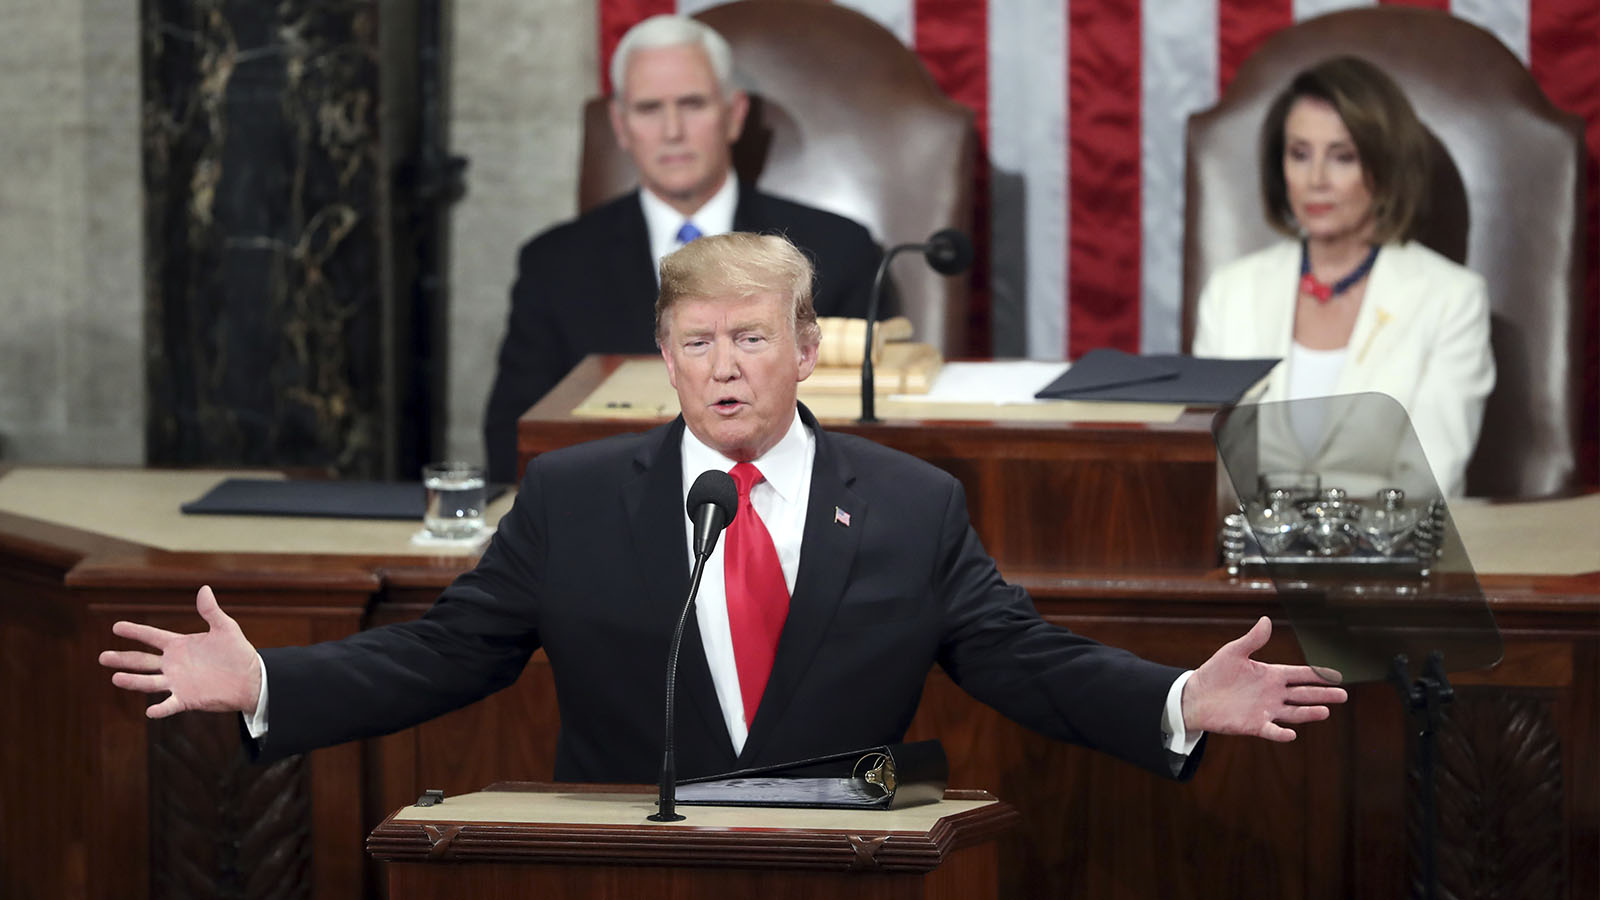 הנשיא דונלד טראמפ בנאום מצב האומה, מאחוריו יושבים סגן הנשיא מייק פנס ודוברת הבית, ננסי פלוסי. 5 בפברואר 2019. (AP Photo/Andrew Harnik)